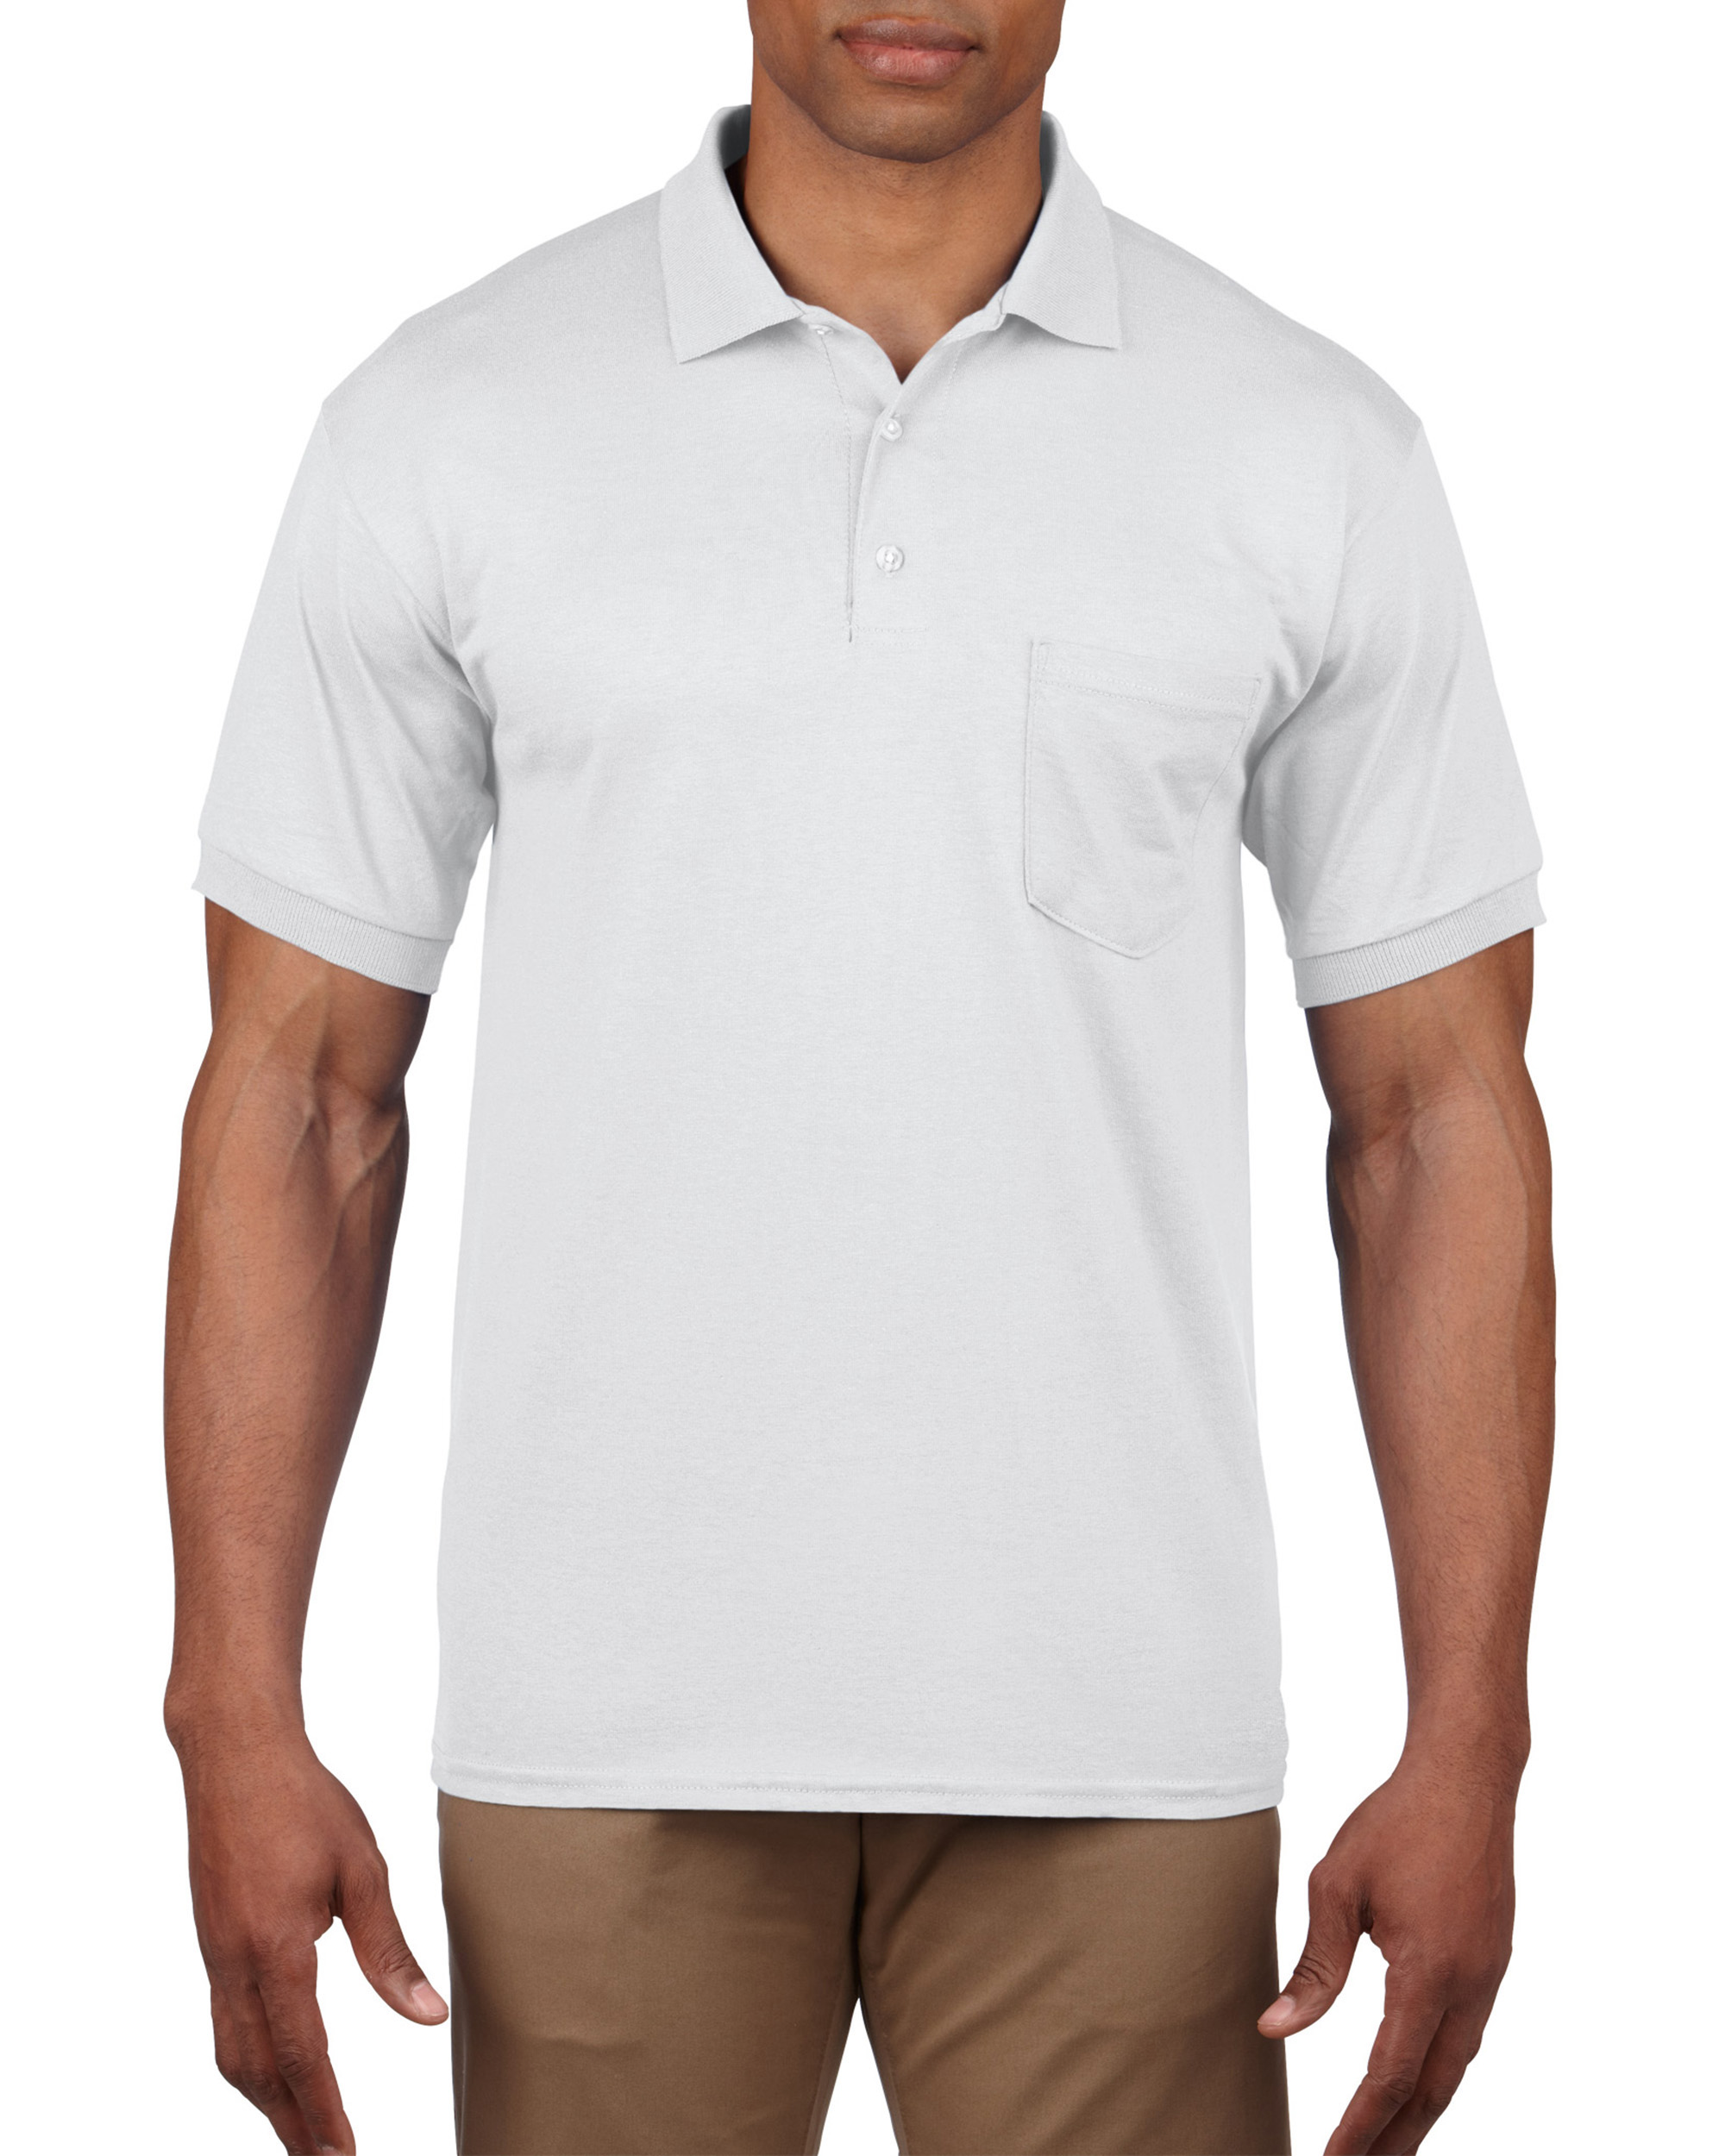 Gildan® 8900 DryBlend® Adult Jersey Sport Shirt with Pocket